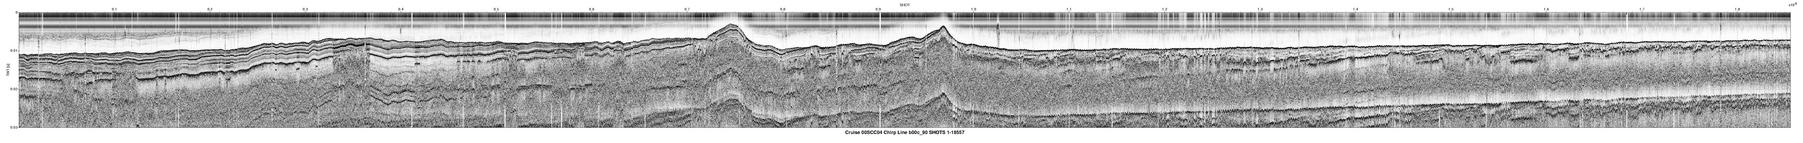 00SCC04 b00c_90 seismic profile image